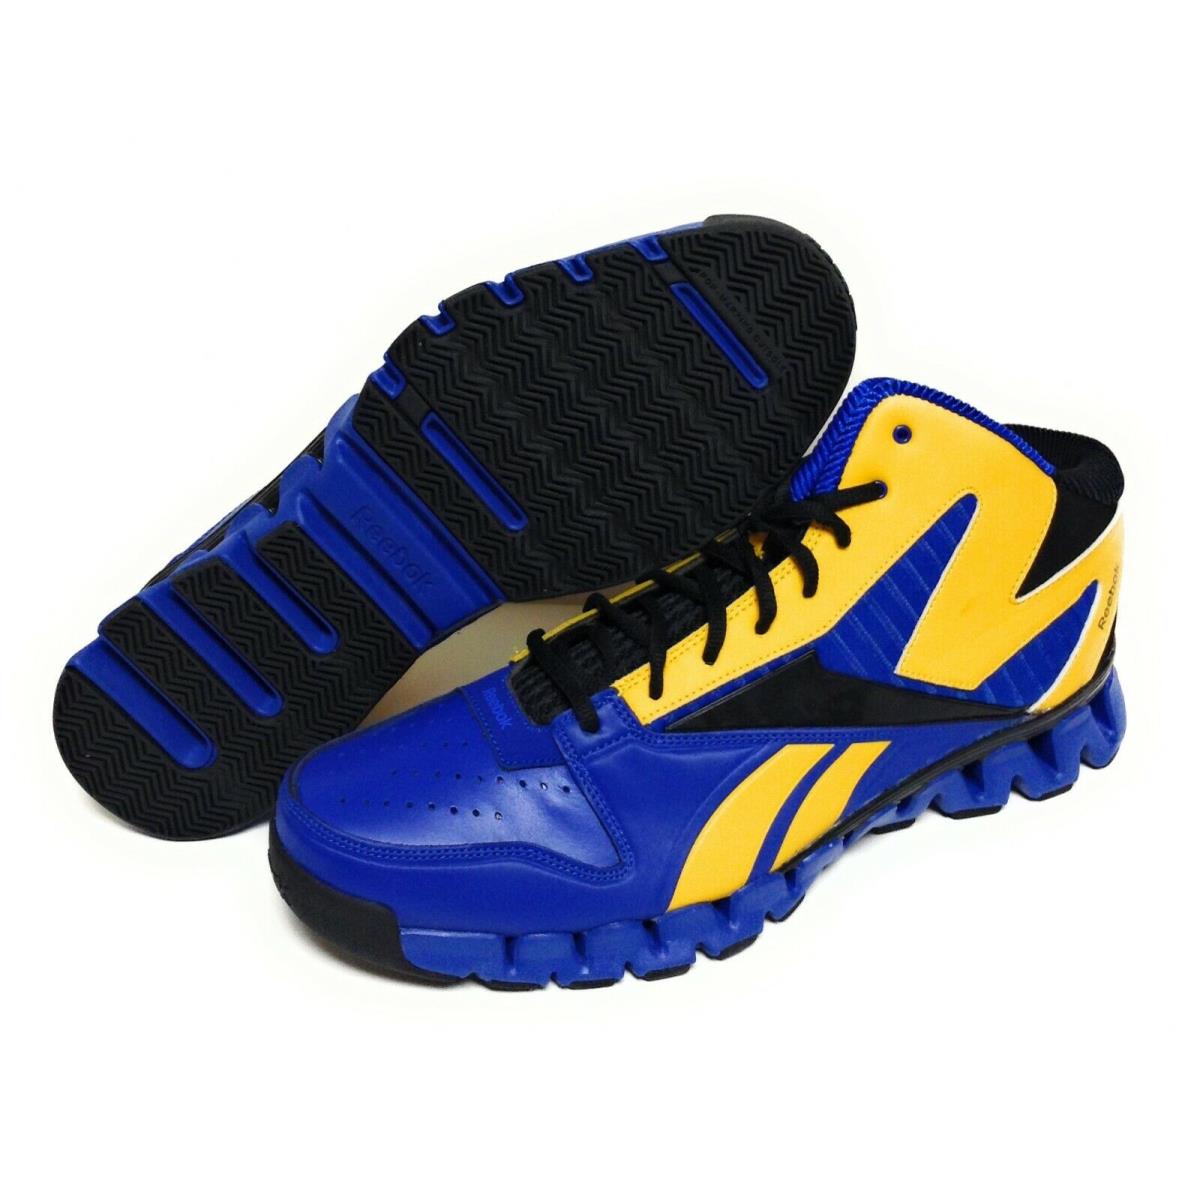 Mens Reebok Zig Nano Pro Fury V44519 Blue Sample Basketball Sneakers Shoes